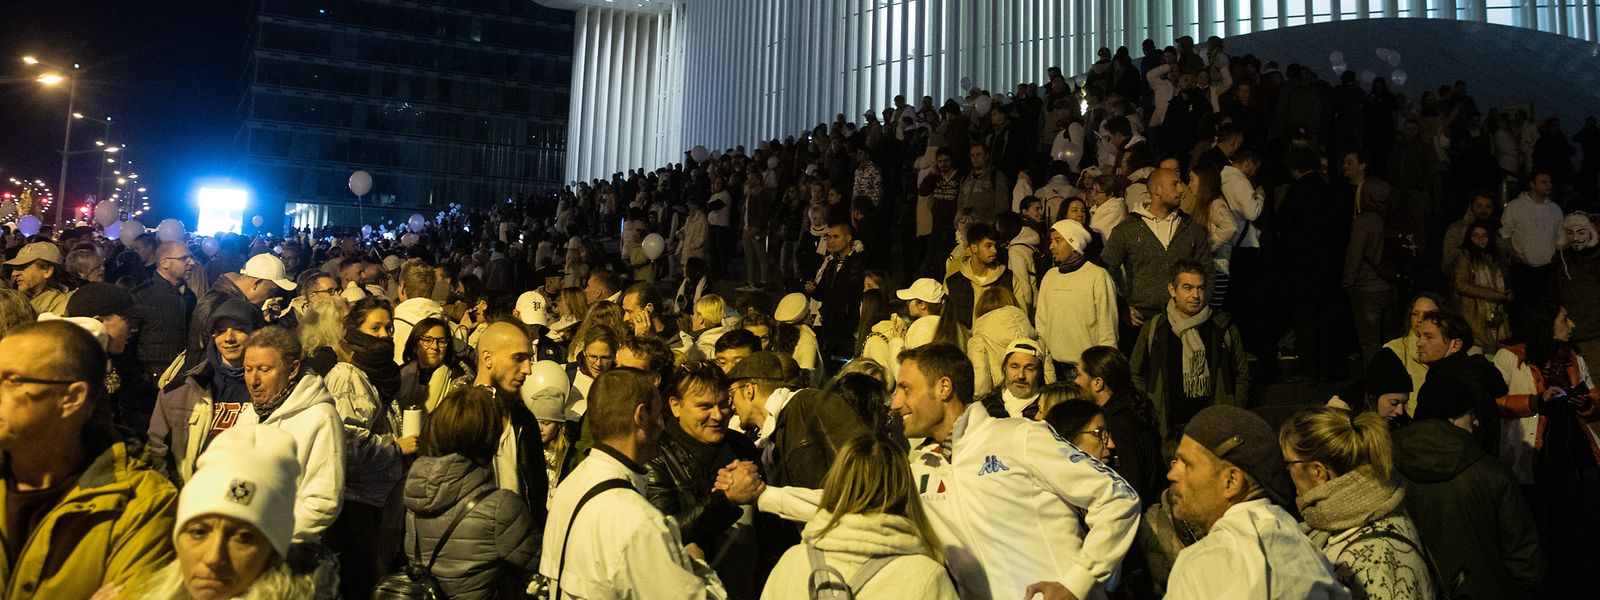 Über 3.500 Menschen nahmen an der letzten Marche blanche silencieuse vor zwei Wochen teil.
